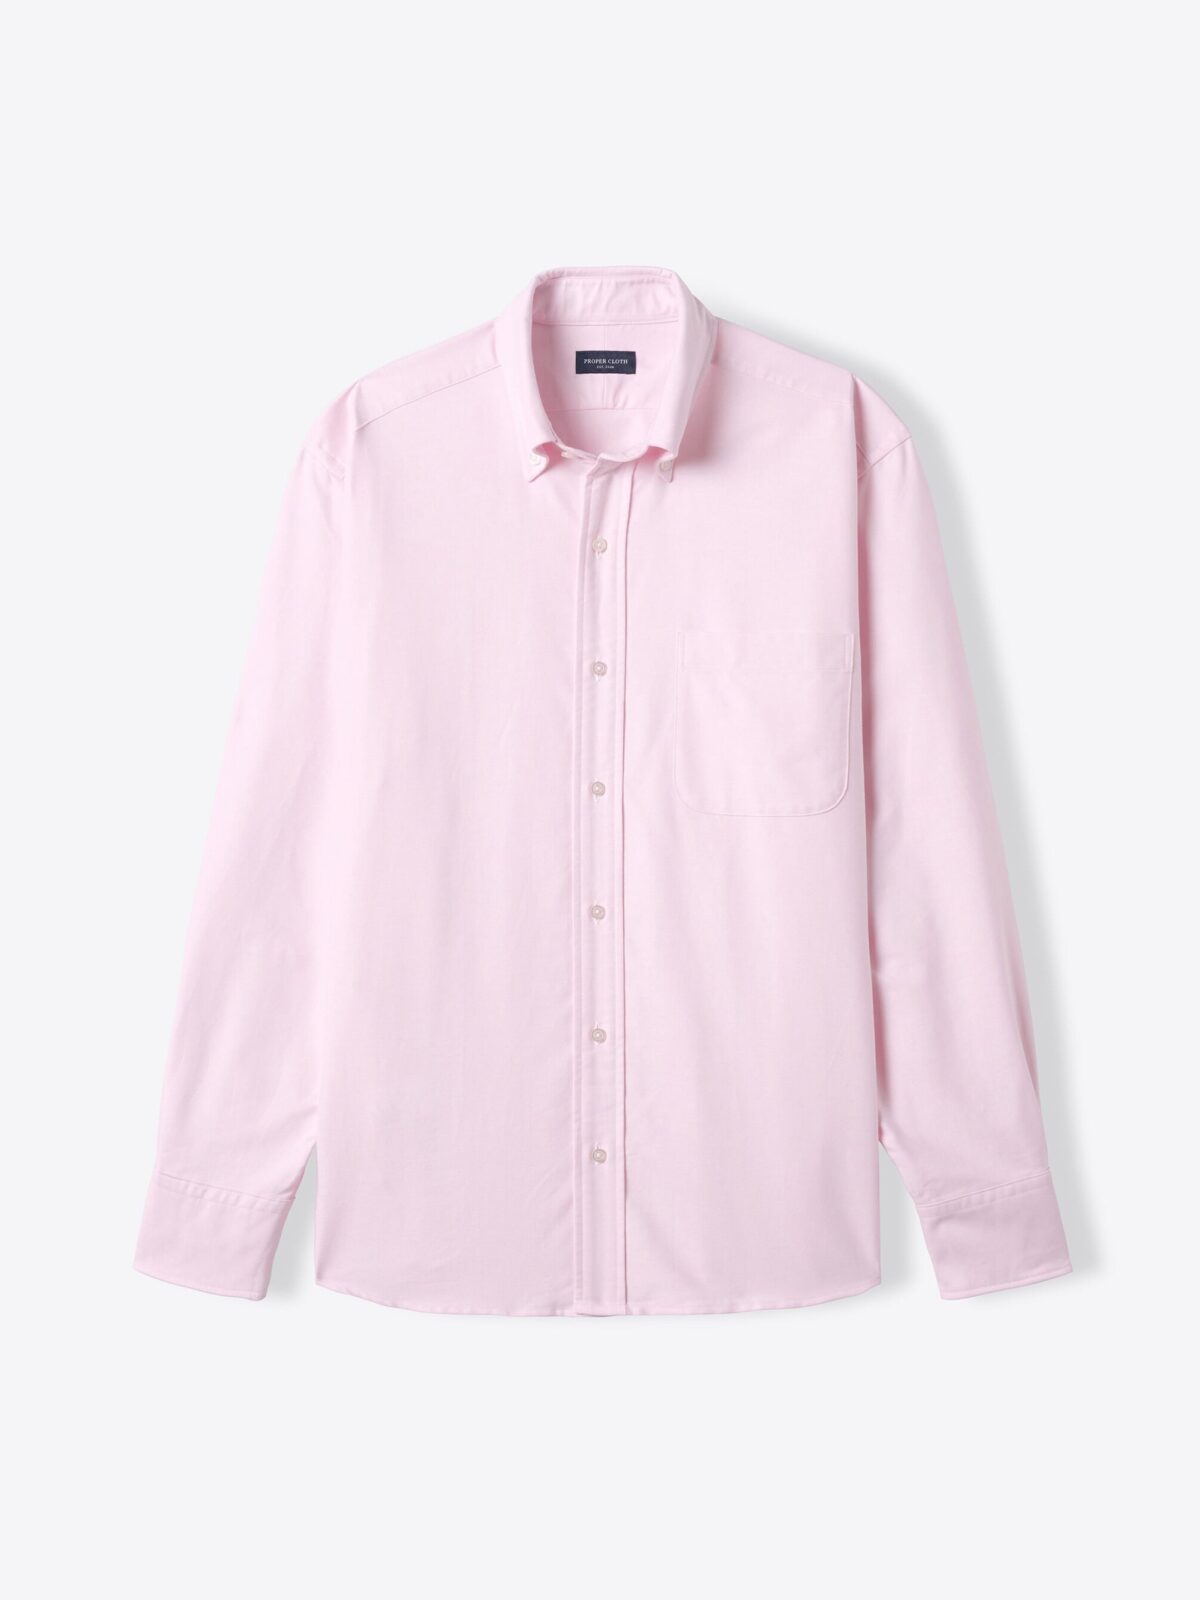 light pink dress shirt